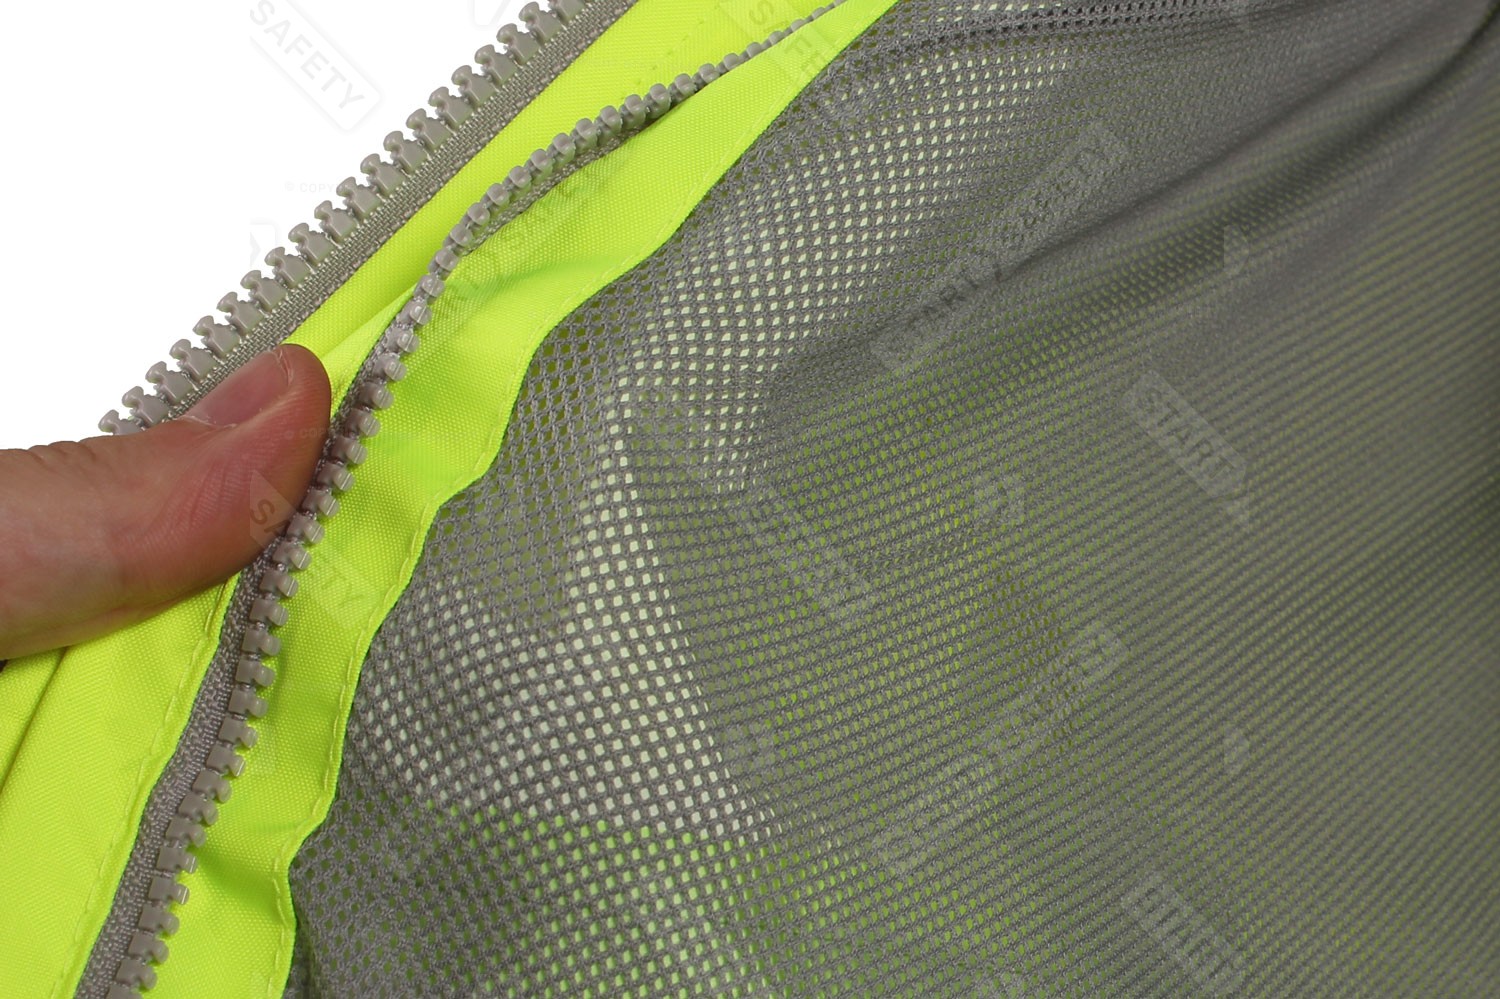 Mesh Liner On A Waterproof Jacket